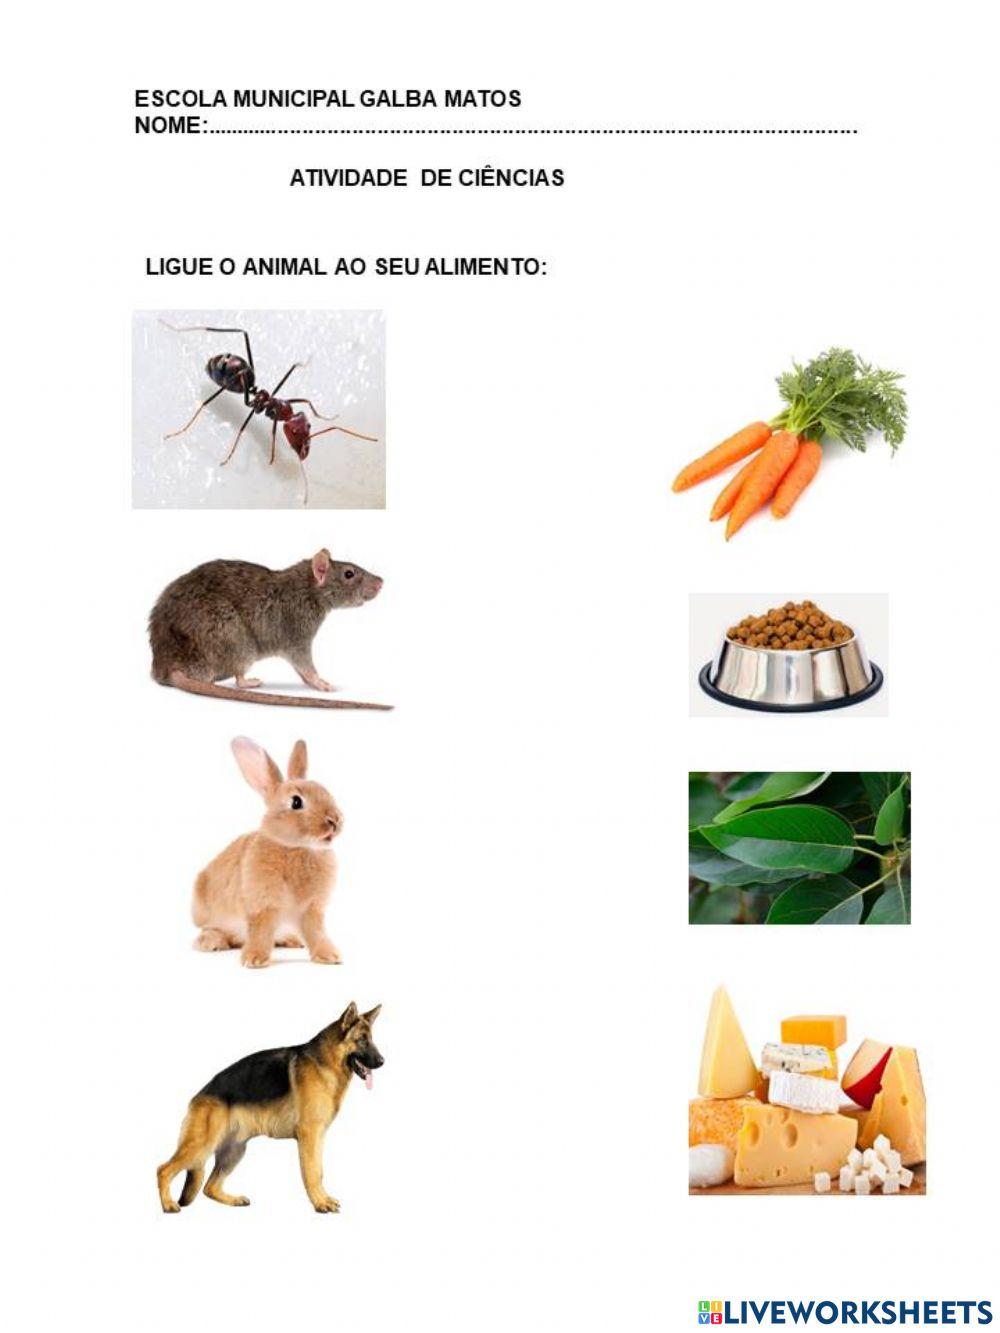 Animal e seu alimento